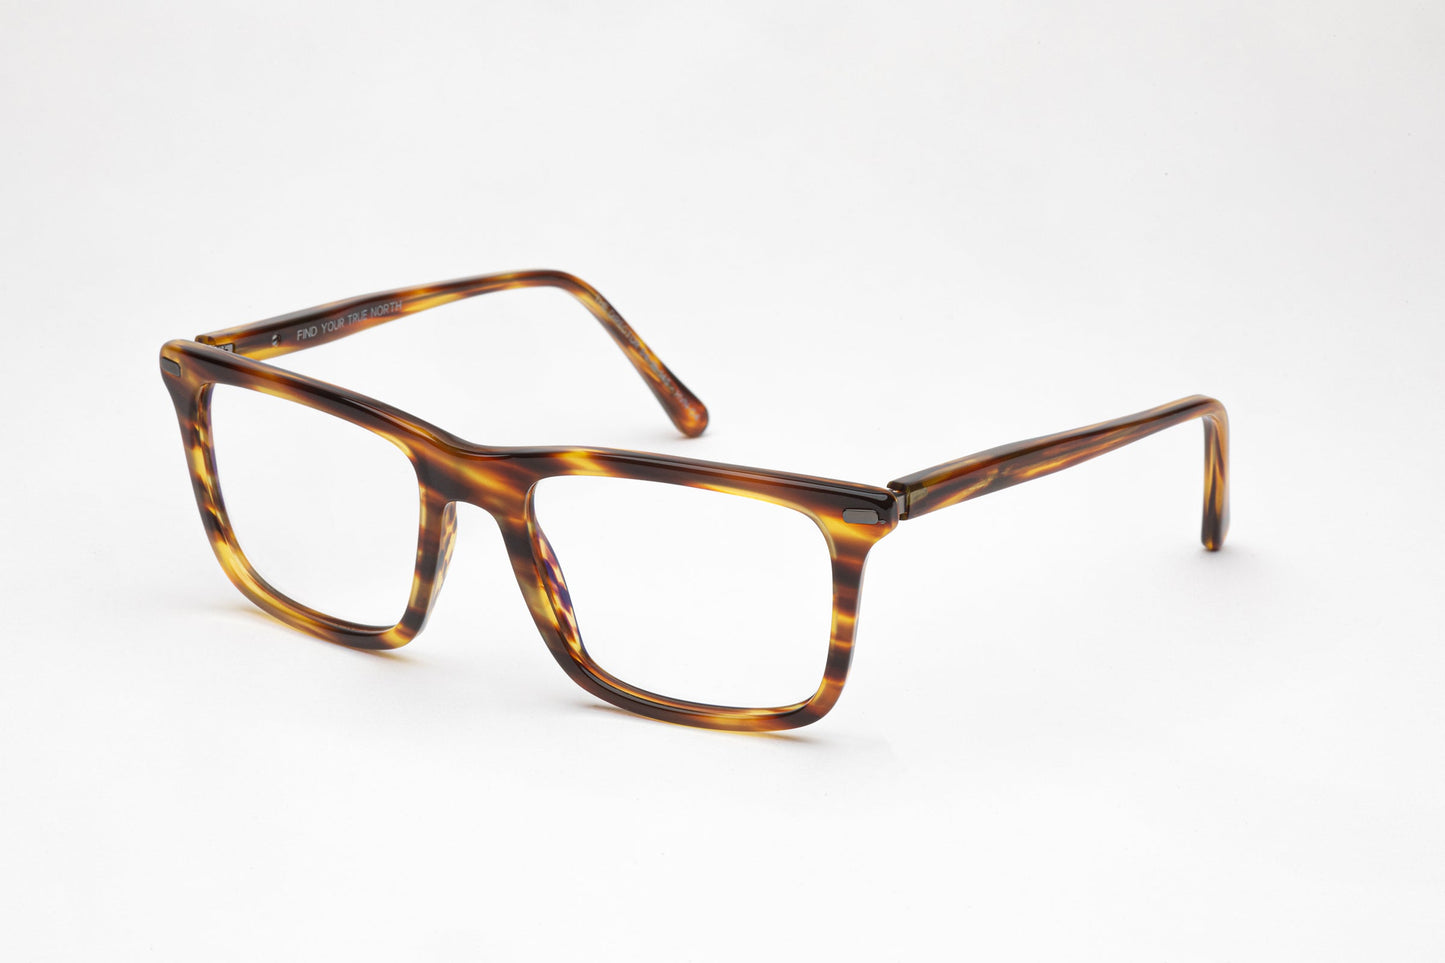 Angled View - The Director 3 | Tortoiseshell Frame Glasses - Designer Prescription Glasses with Oversized Rectangular Frames 